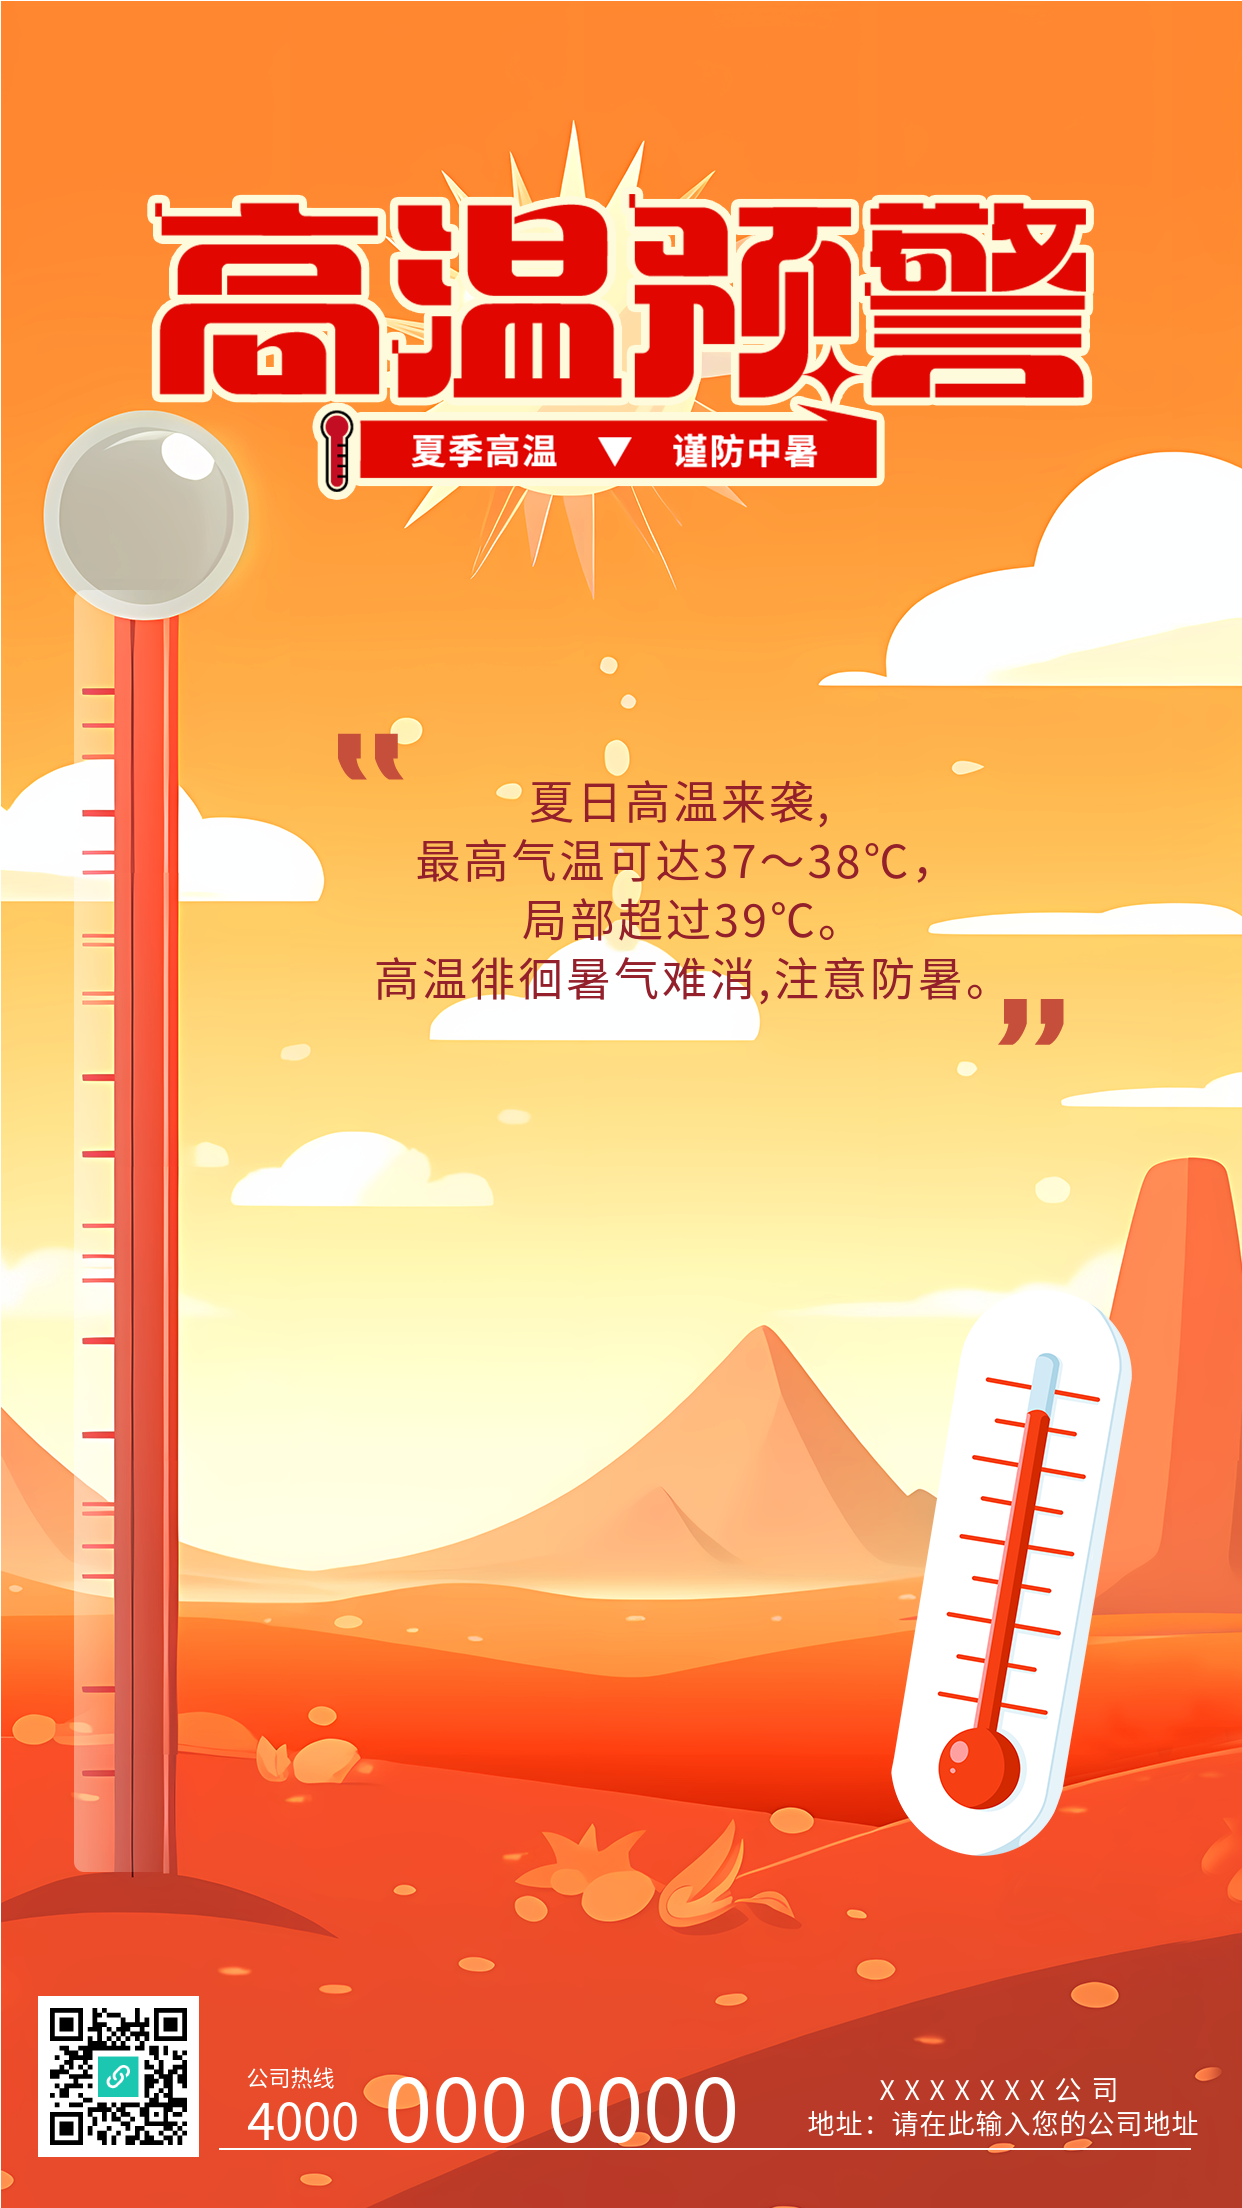 夏日橙色天空高温预警手机海报